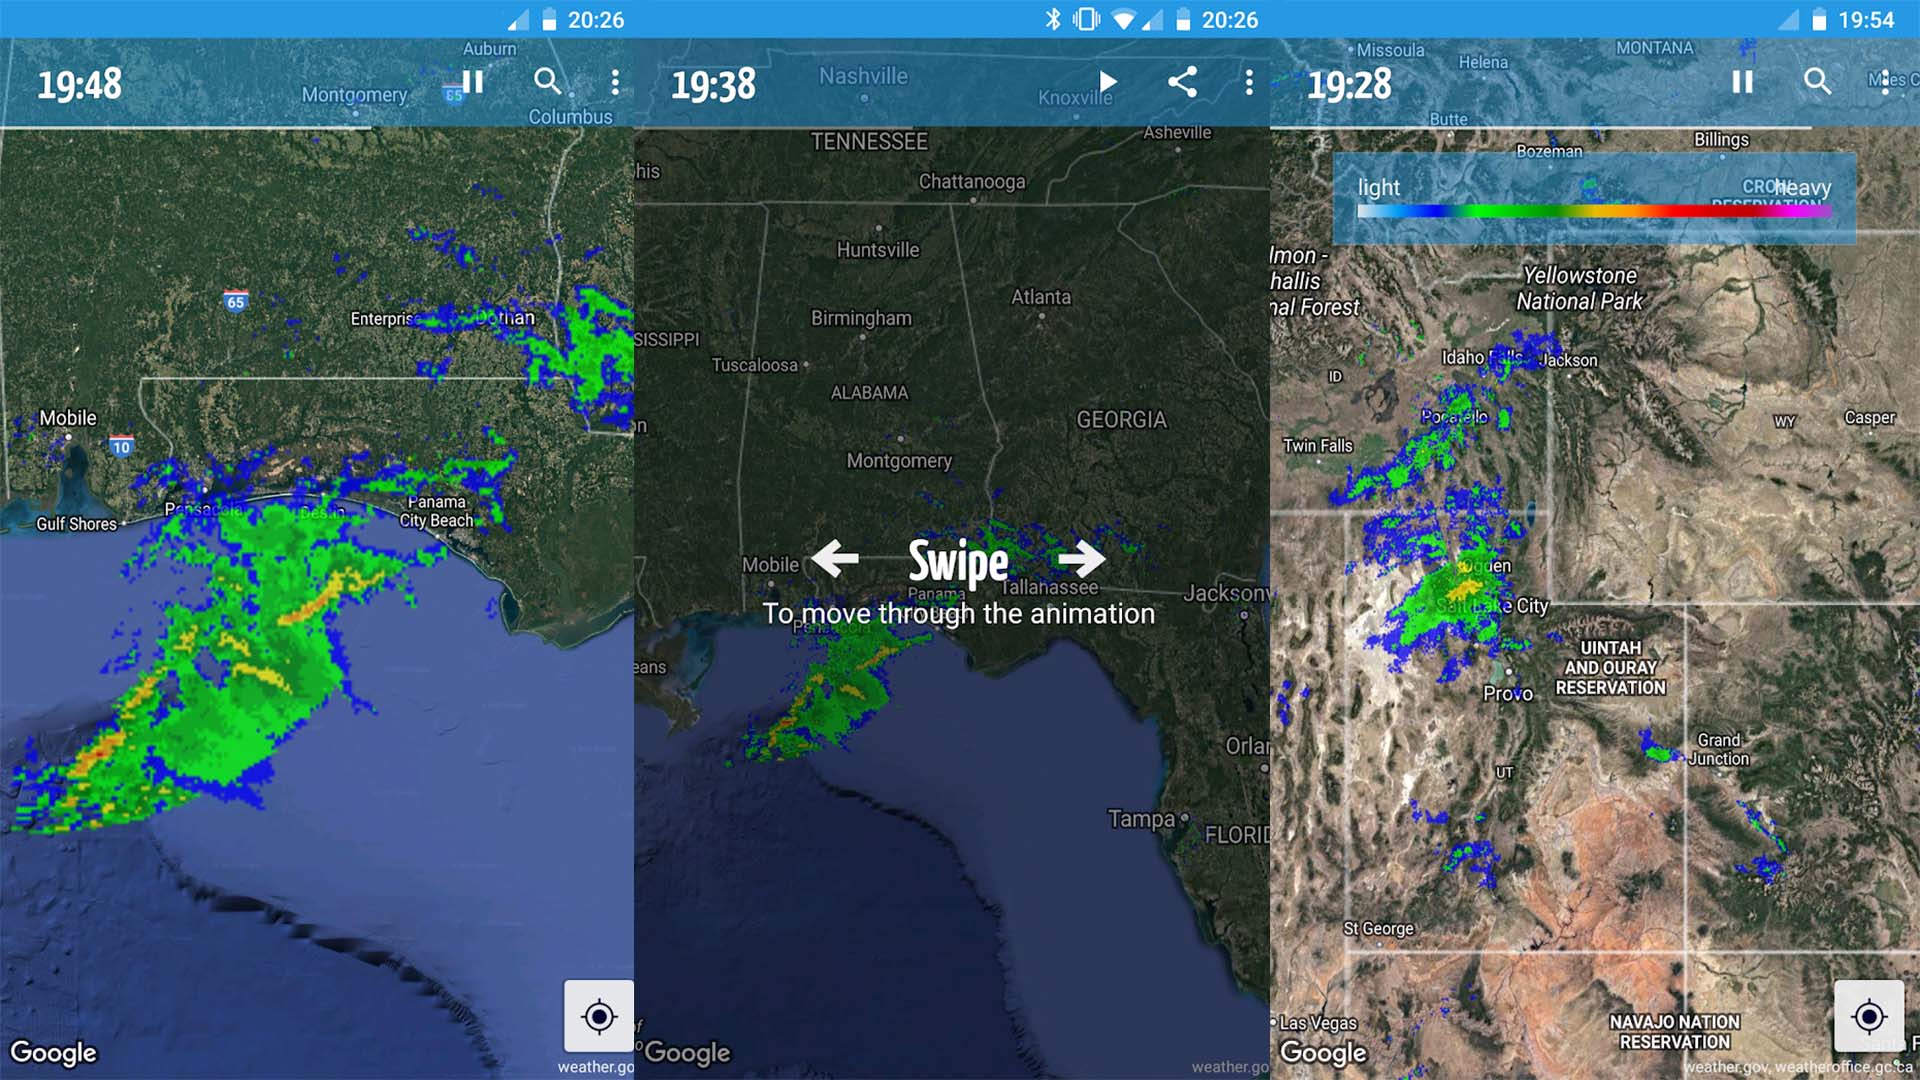 Rainy Days Rain Radar screenshot 2021